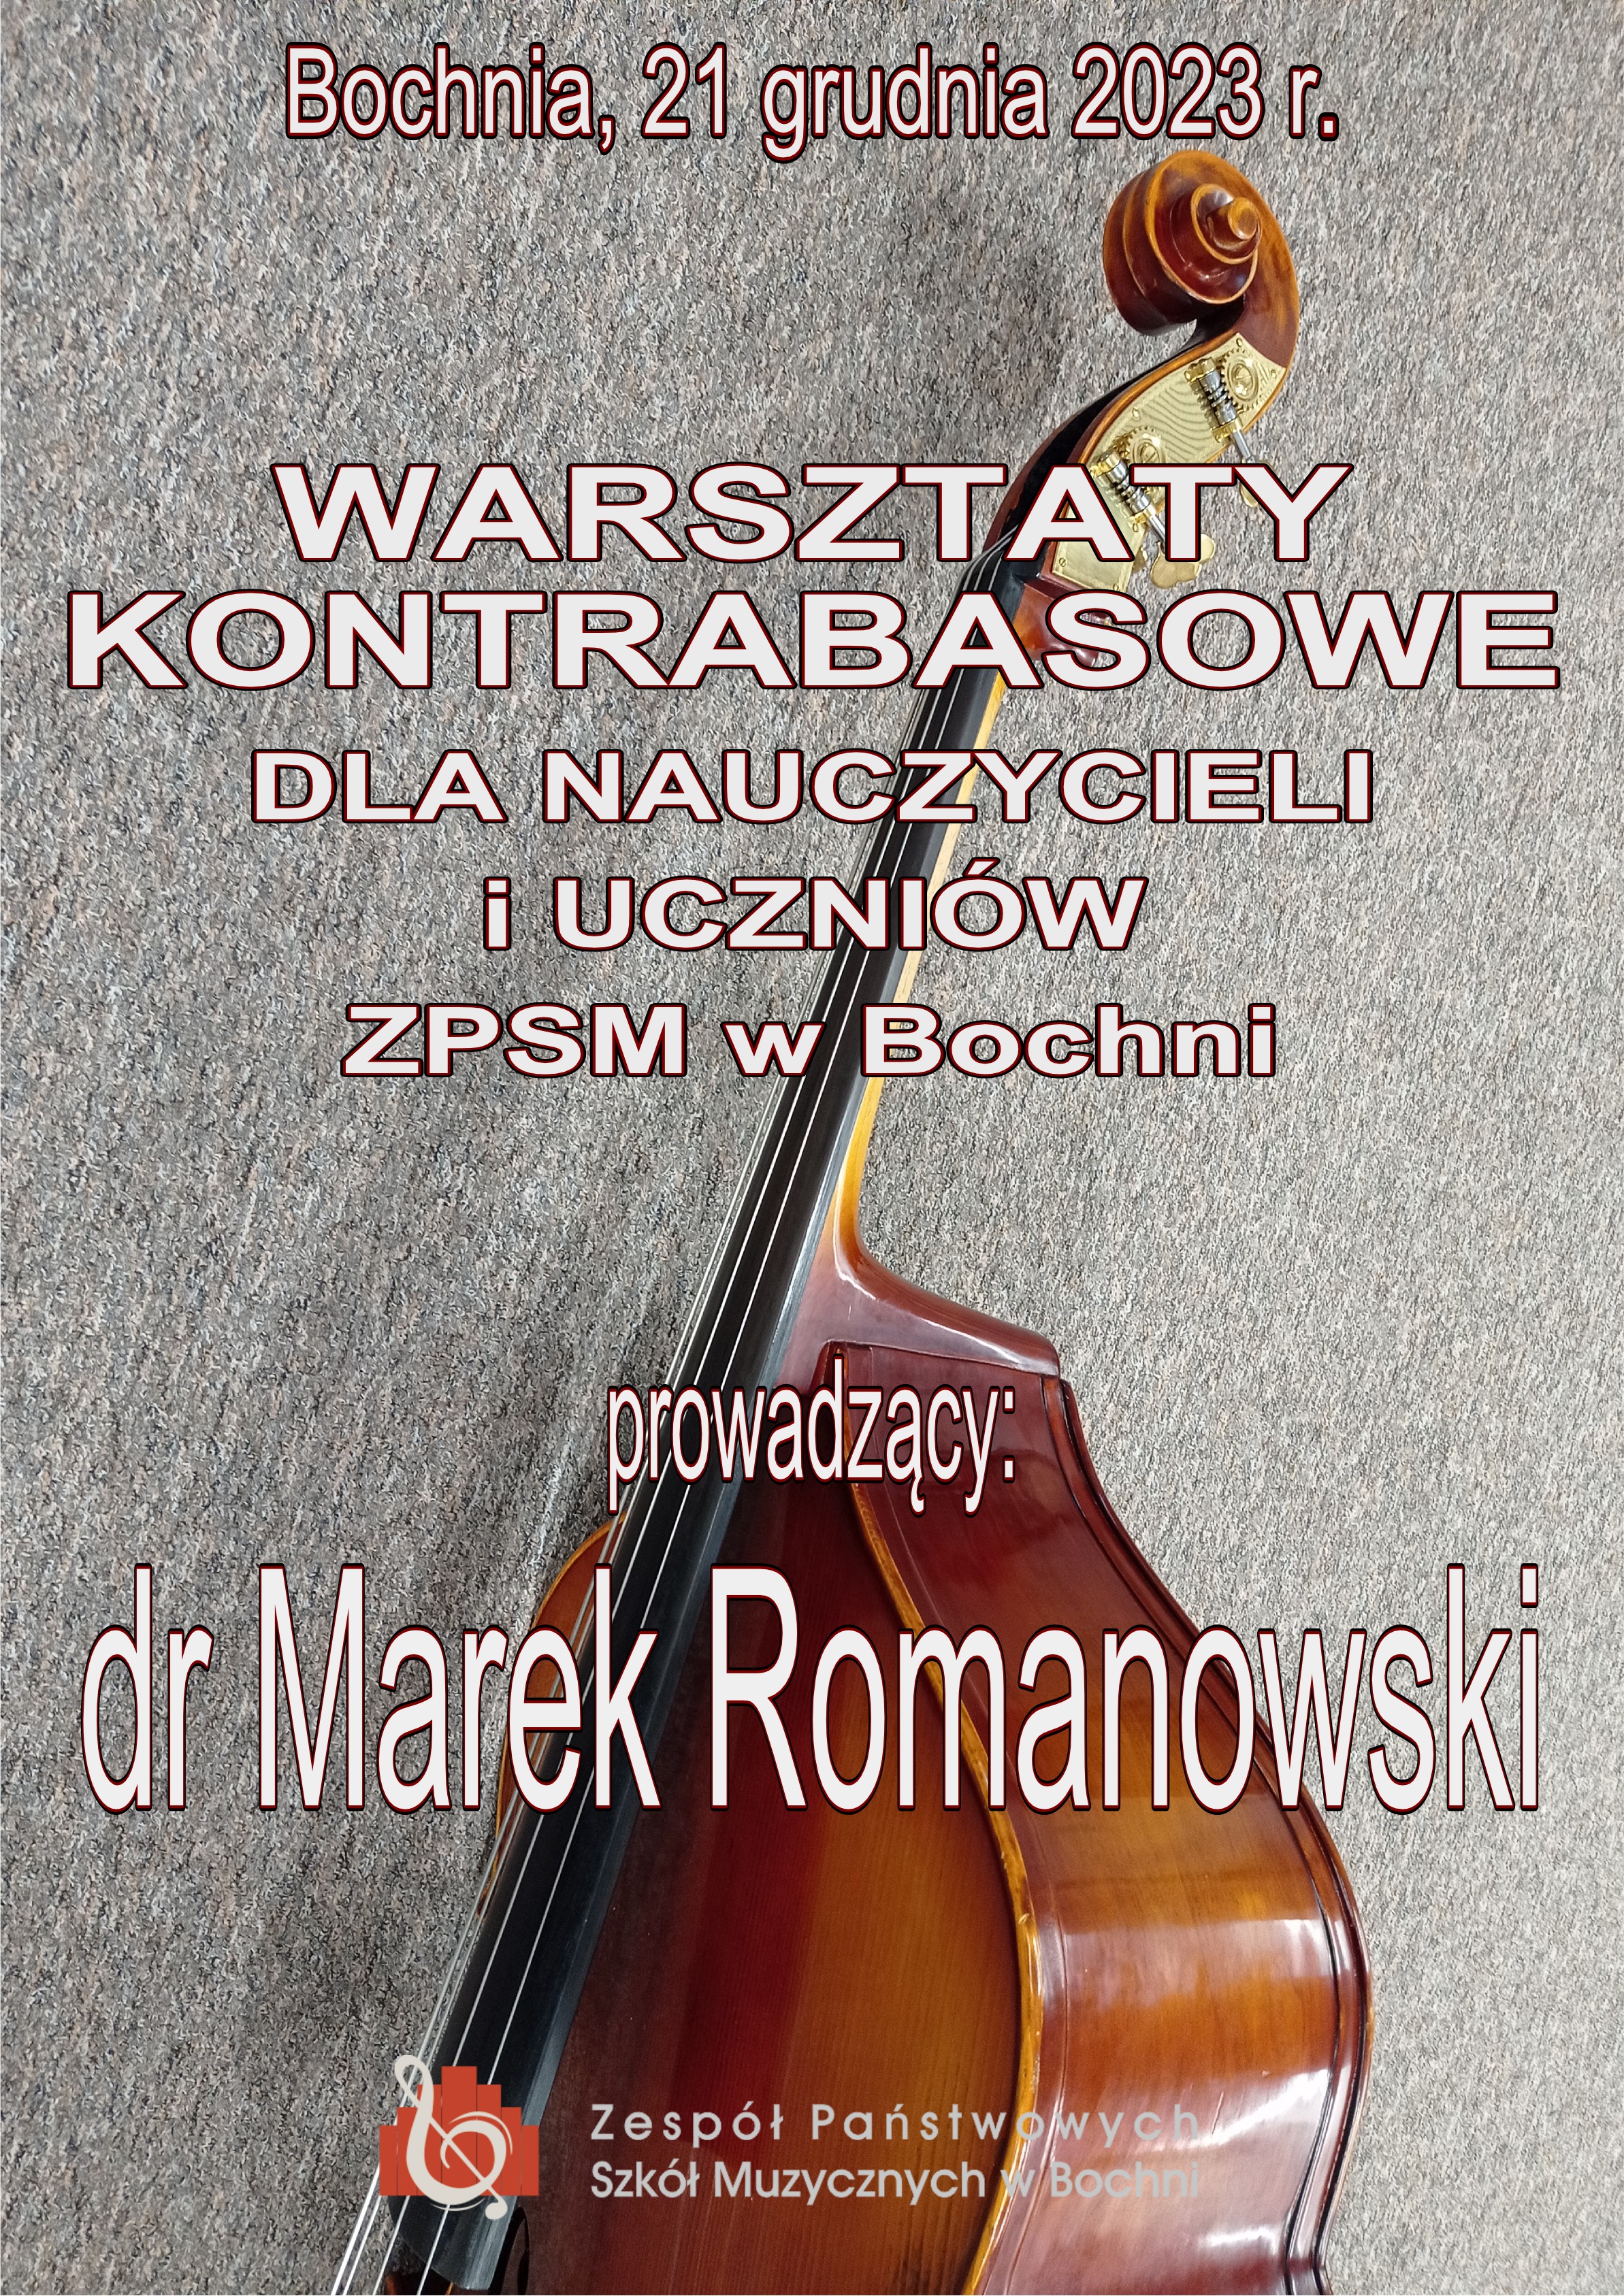 Warsztaty kontrabasowe z panem dr. Markiem Romanowskim 21.12.2023 r.